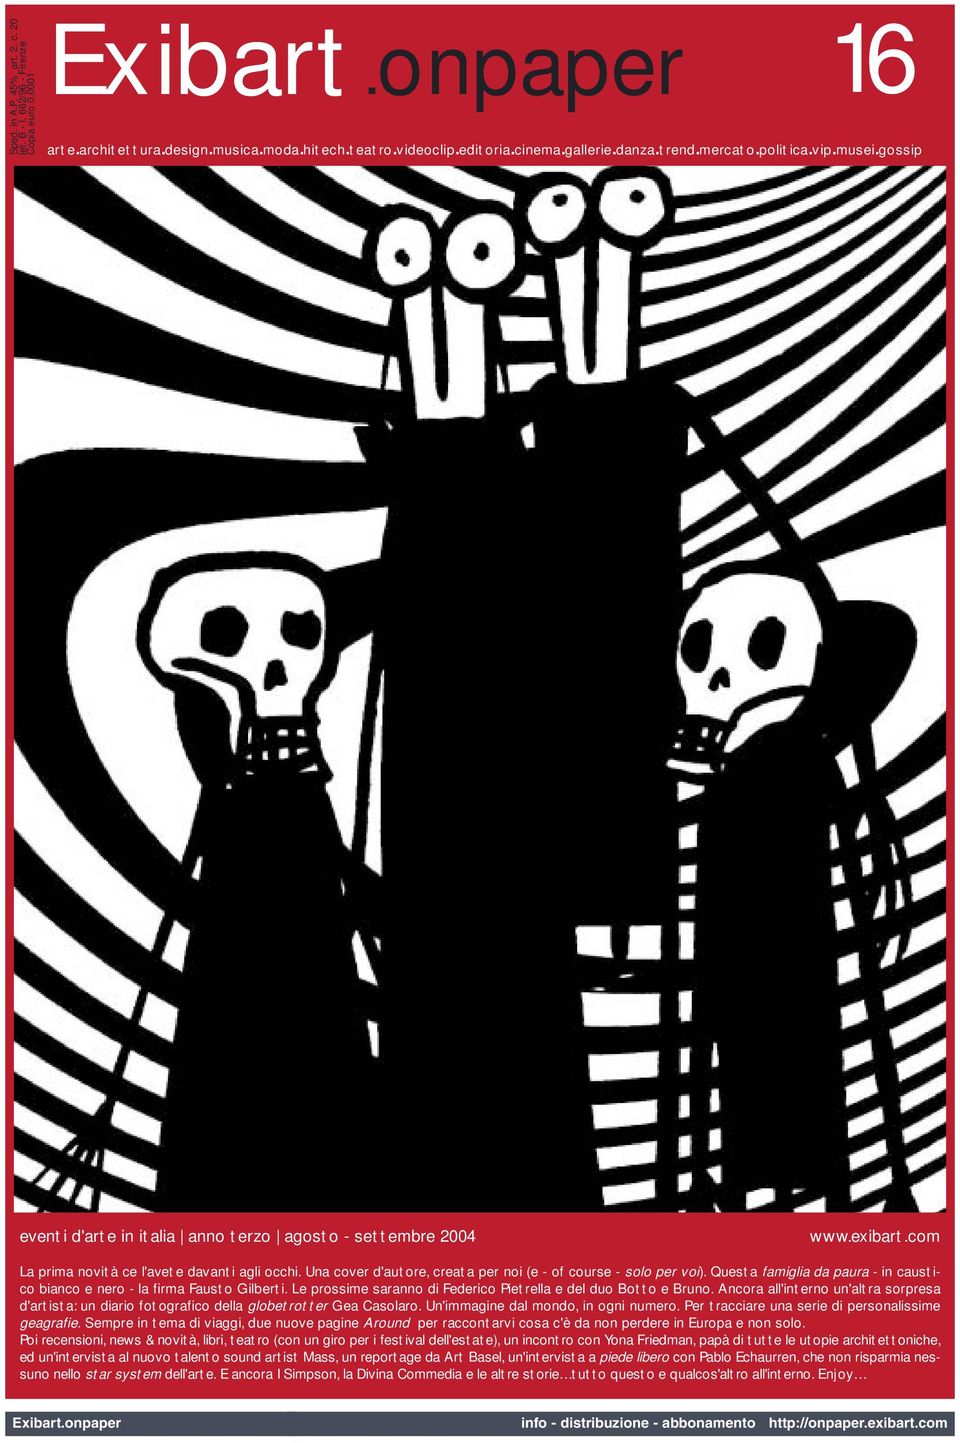 Una cover d'autore, creata per noi (e - of course - solo per voi). Questa famiglia da paura - in caustico bianco e nero - la firma Fausto Gilberti.